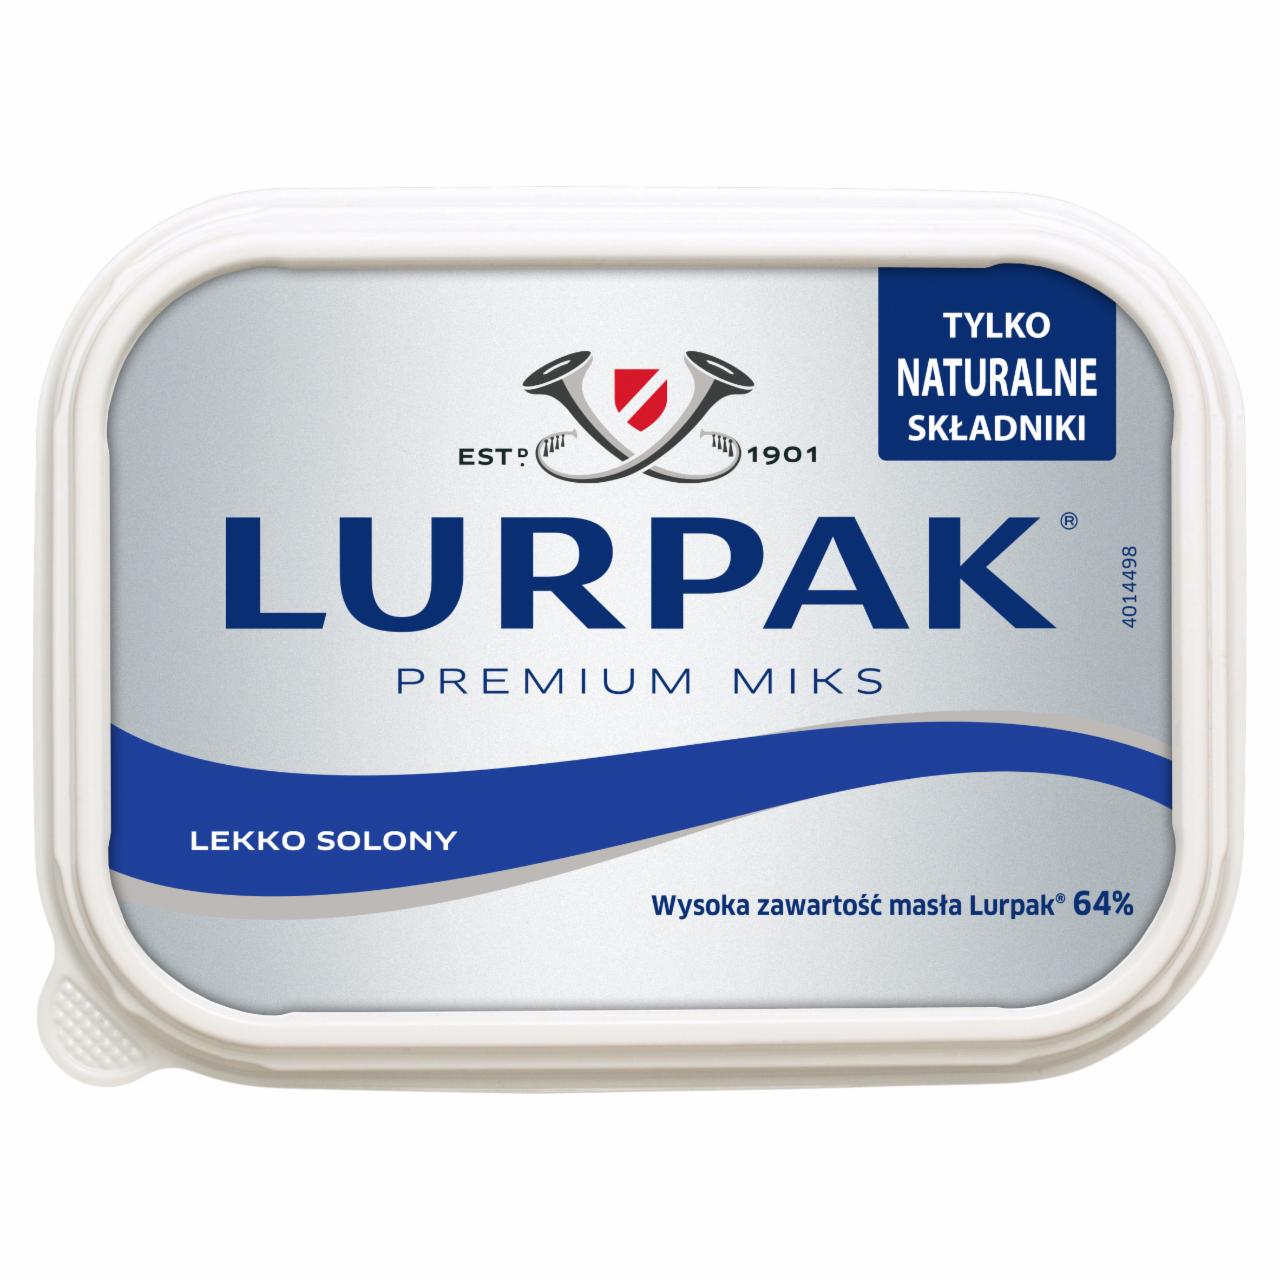 Zdjęcia - Lurpak Premium miks lekko solony 200 g